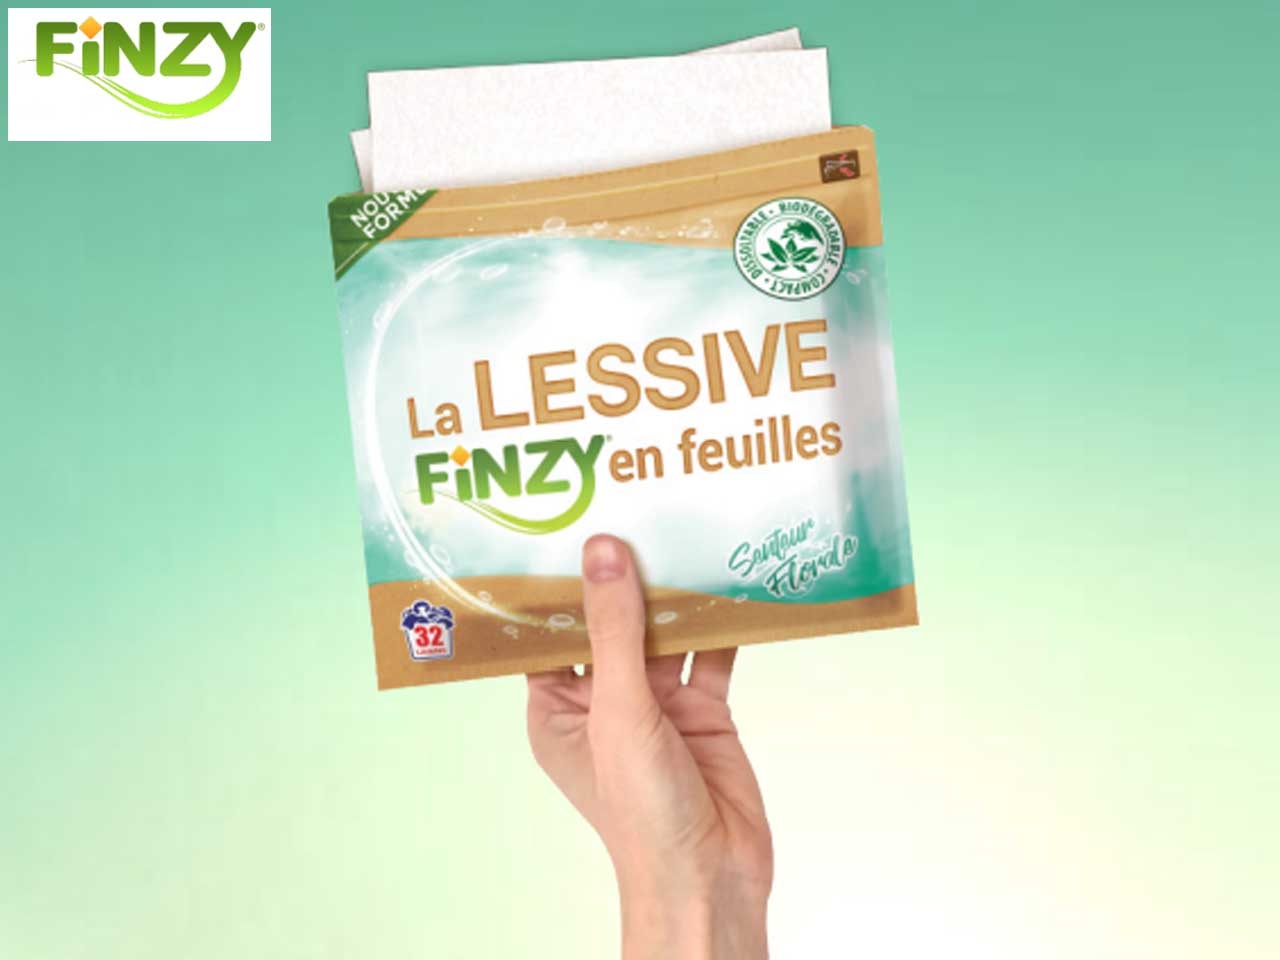 Finzy présente la première lessive en feuilles qui allie efficacité, économies et protection de l’environnement